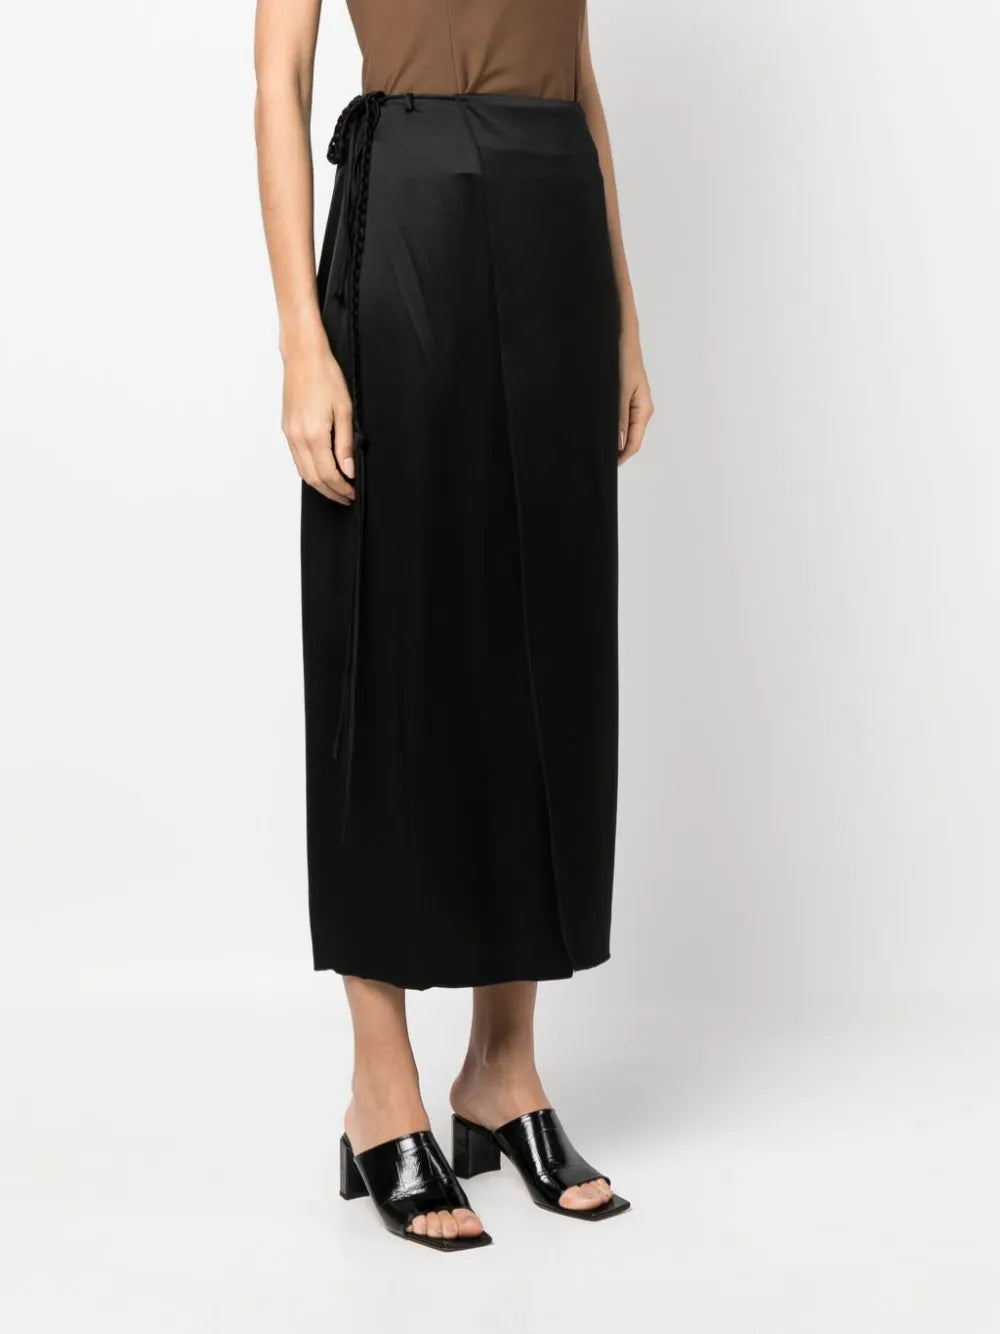 Racha Skirt in Black